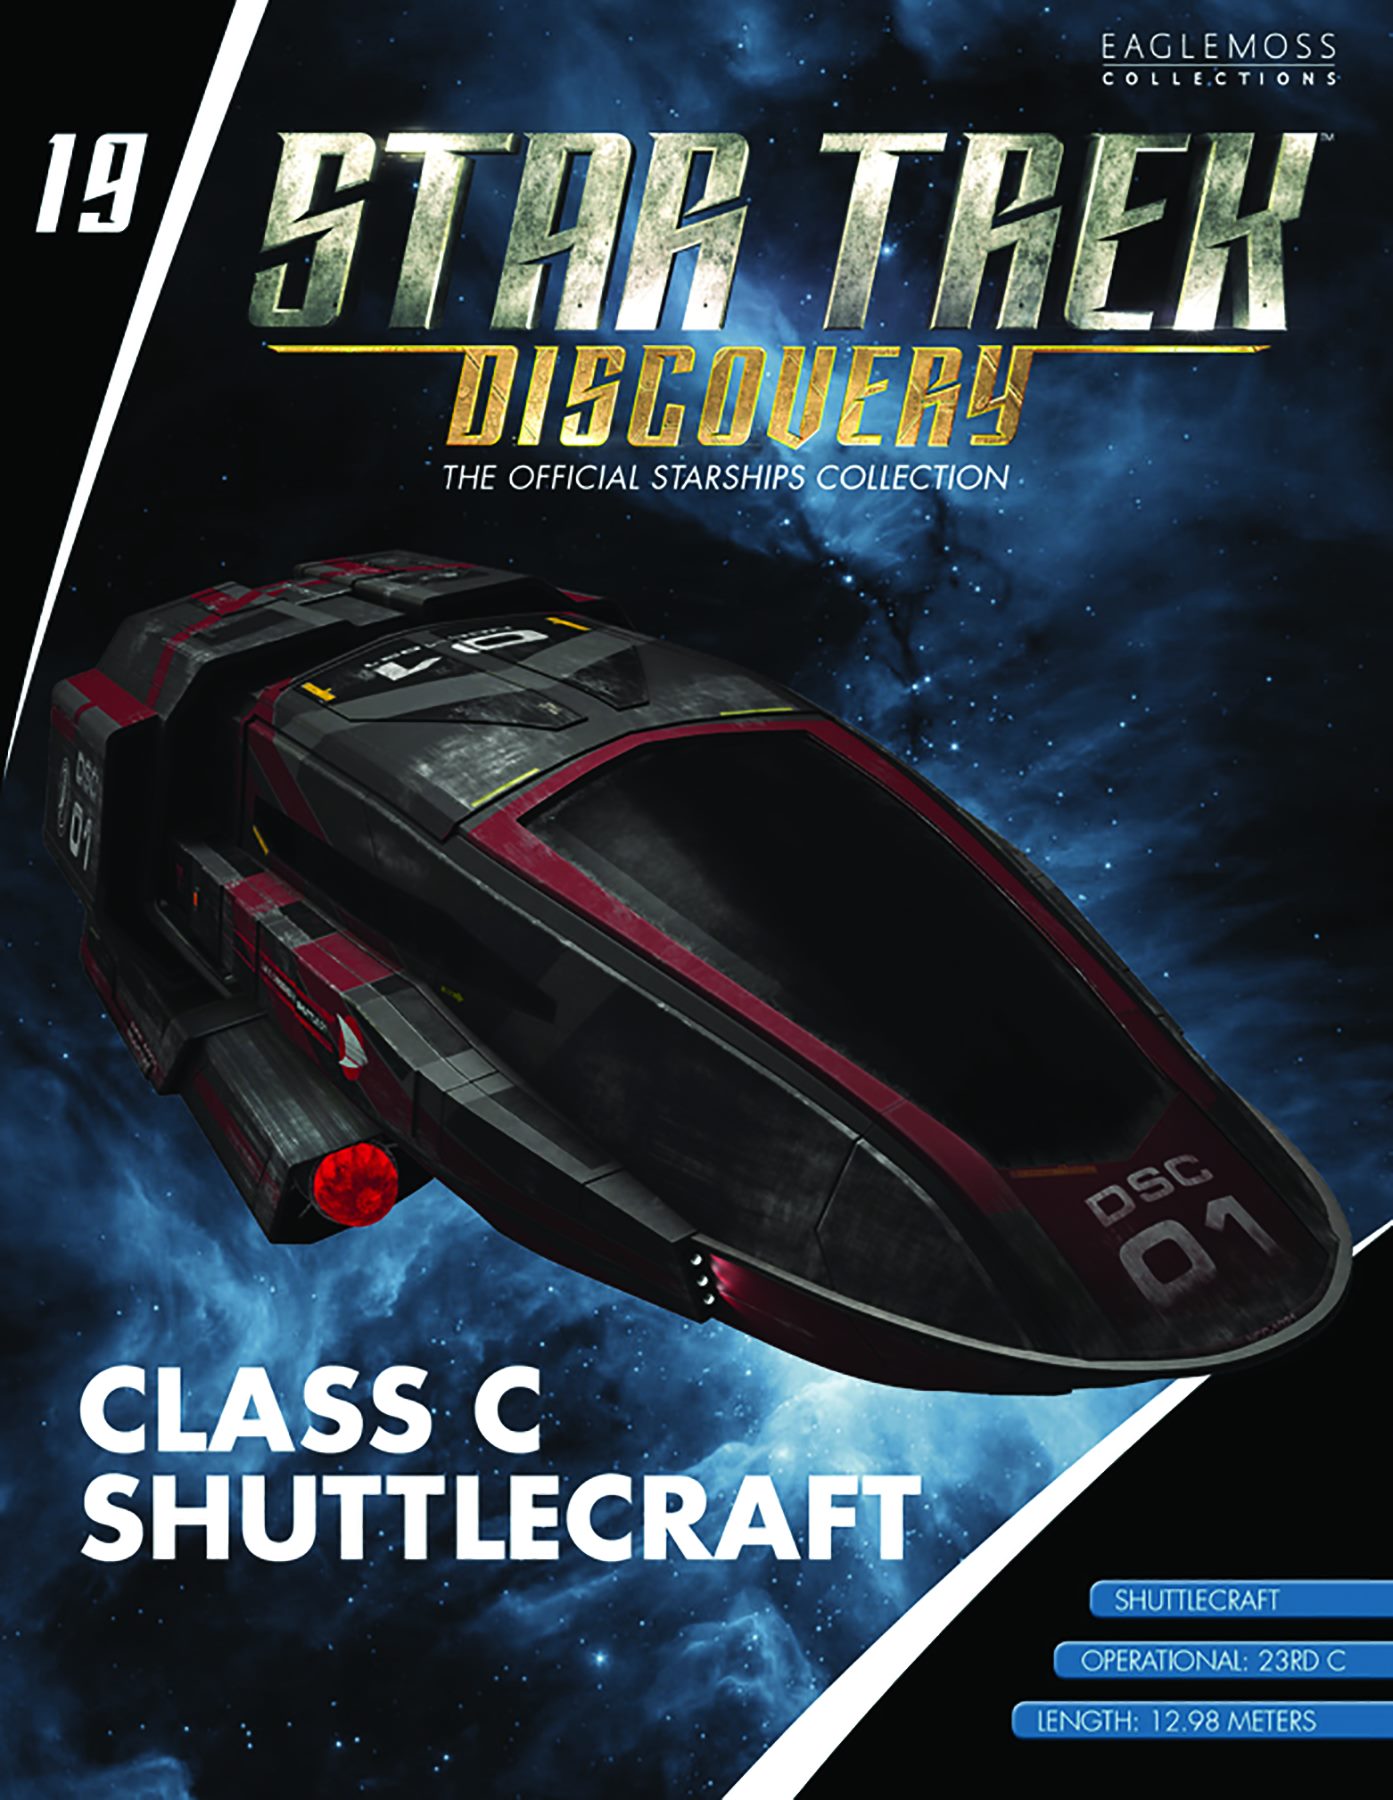 Eaglemoss Star Trek Starships Discovery Issue 19